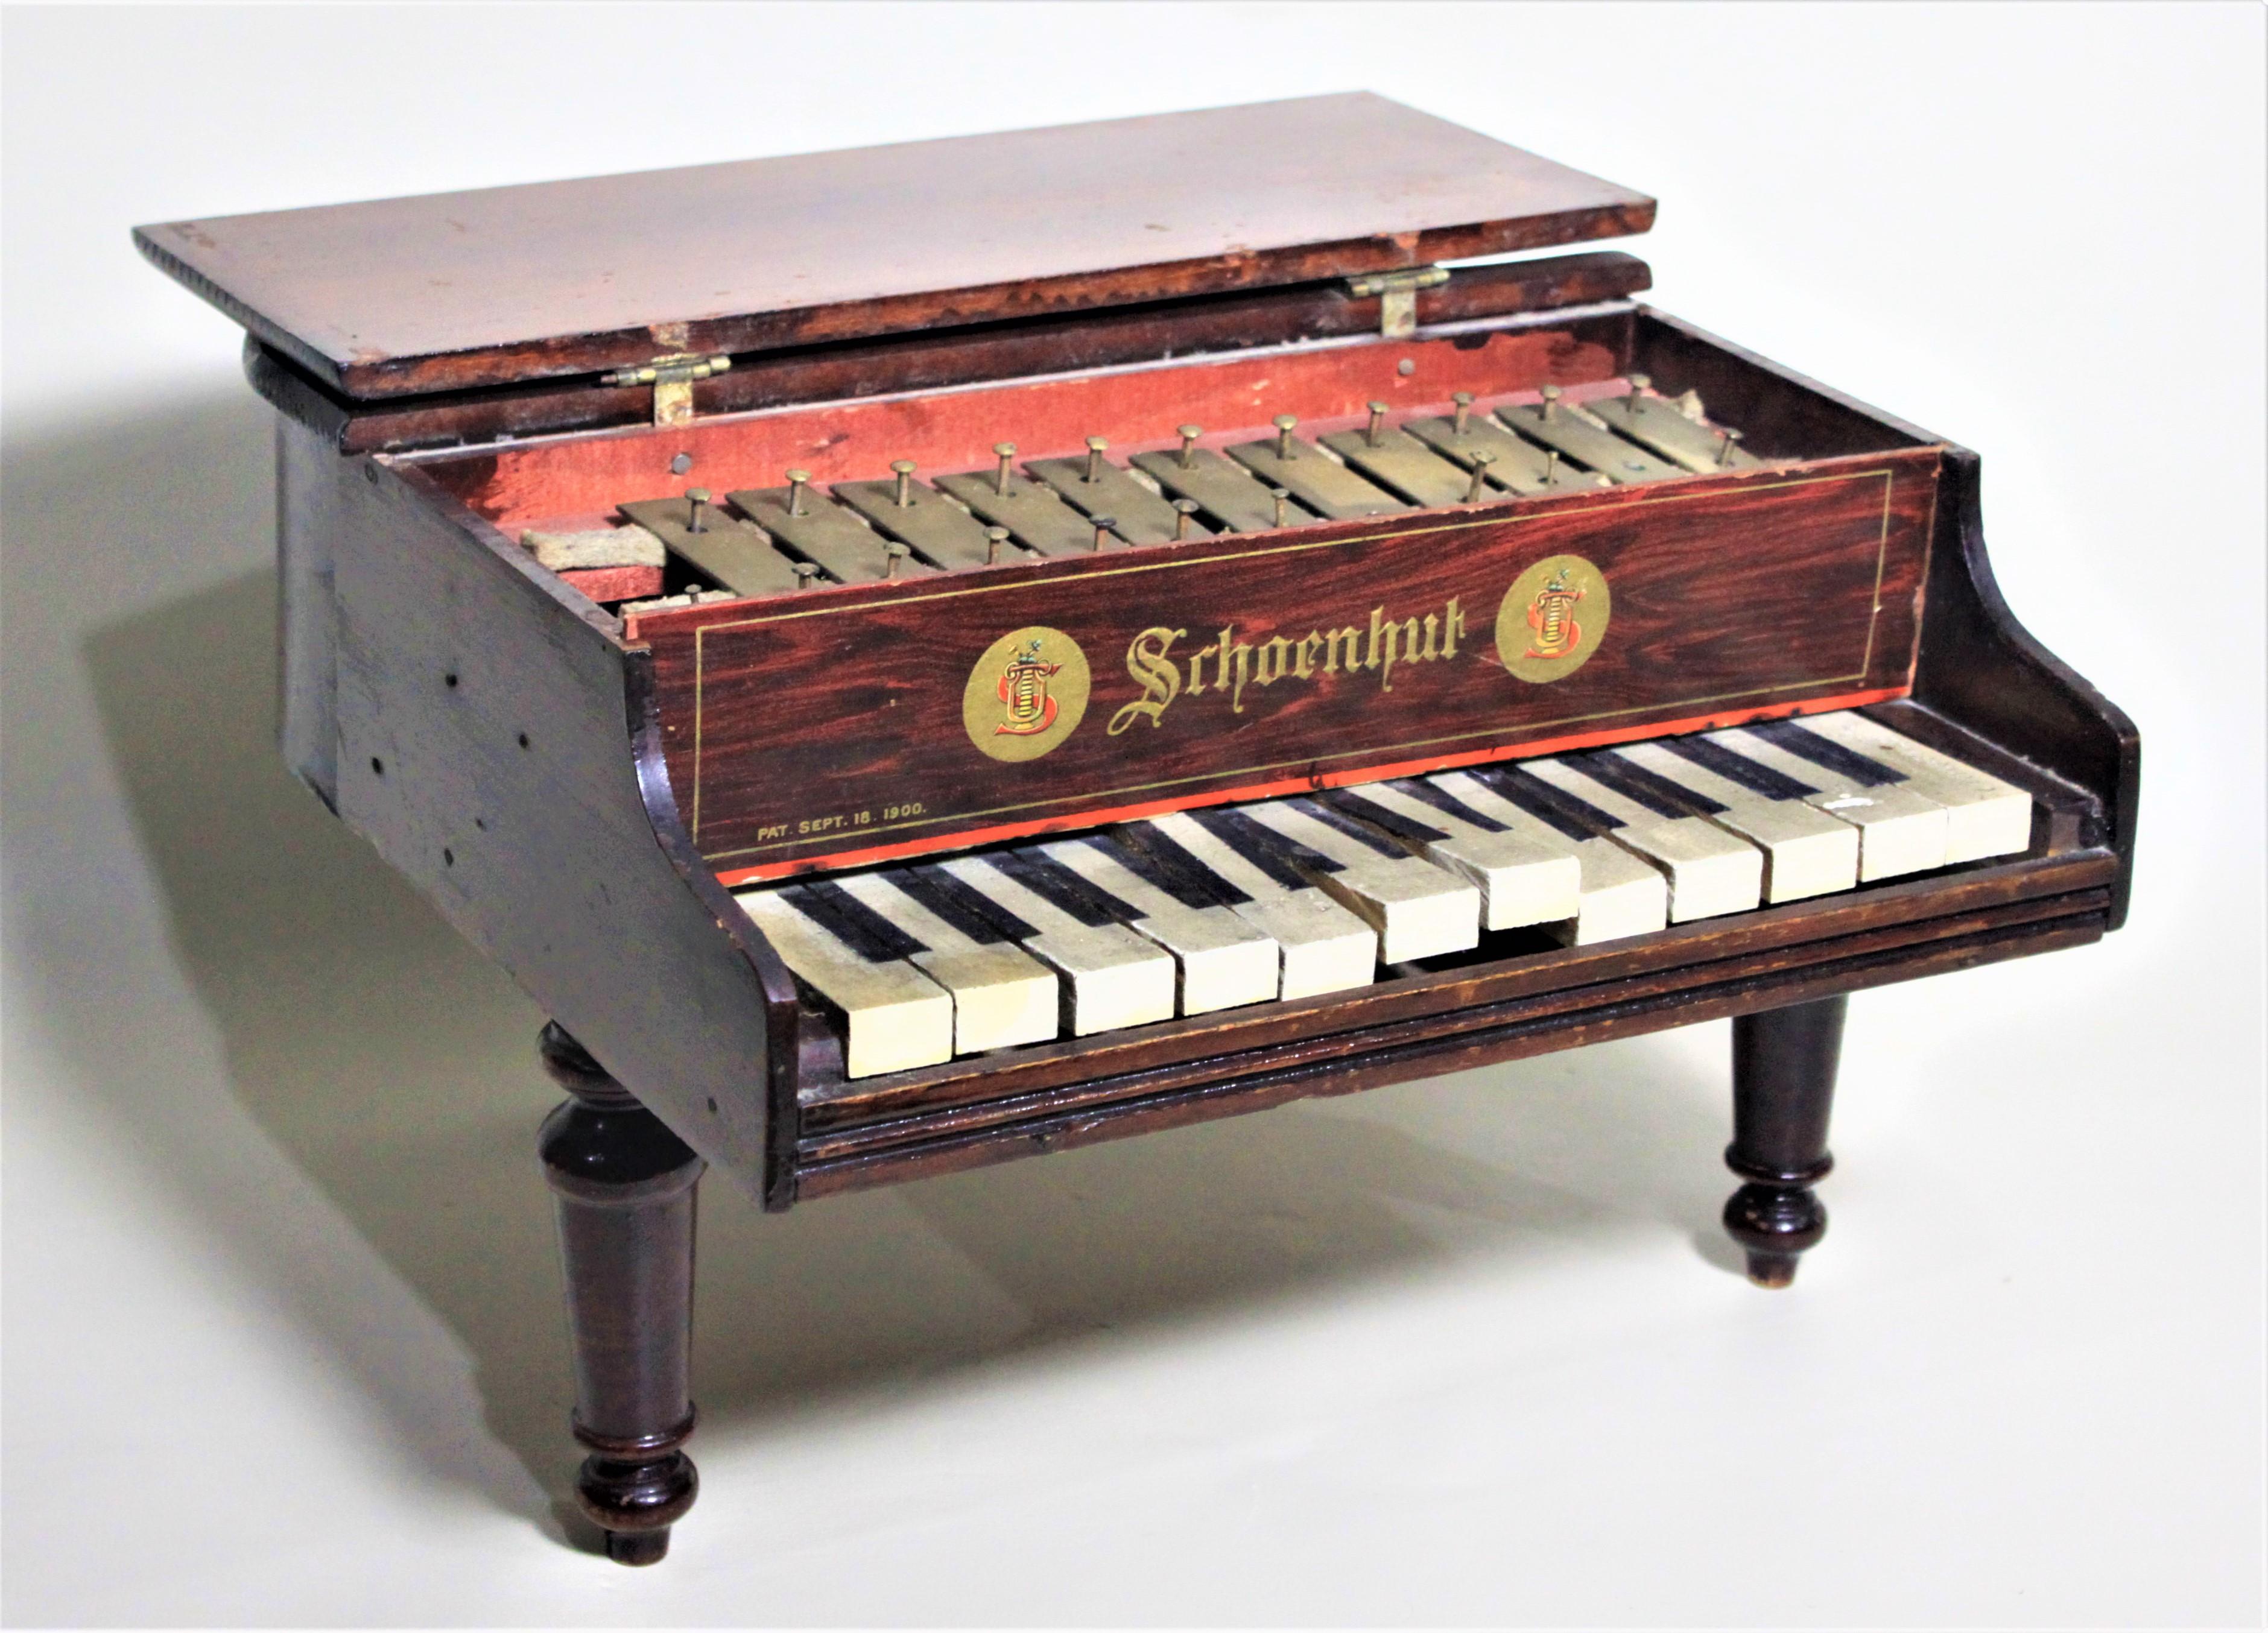 Fabriqué par le célèbre fabricant de jouets américain vers 1920, ce piano à queue en bois a été dédicacé à deux endroits par le légendaire Liberace. Le piano porte une signature sur le fond, datée de mai 1954 ou 1955, le dernier chiffre étant